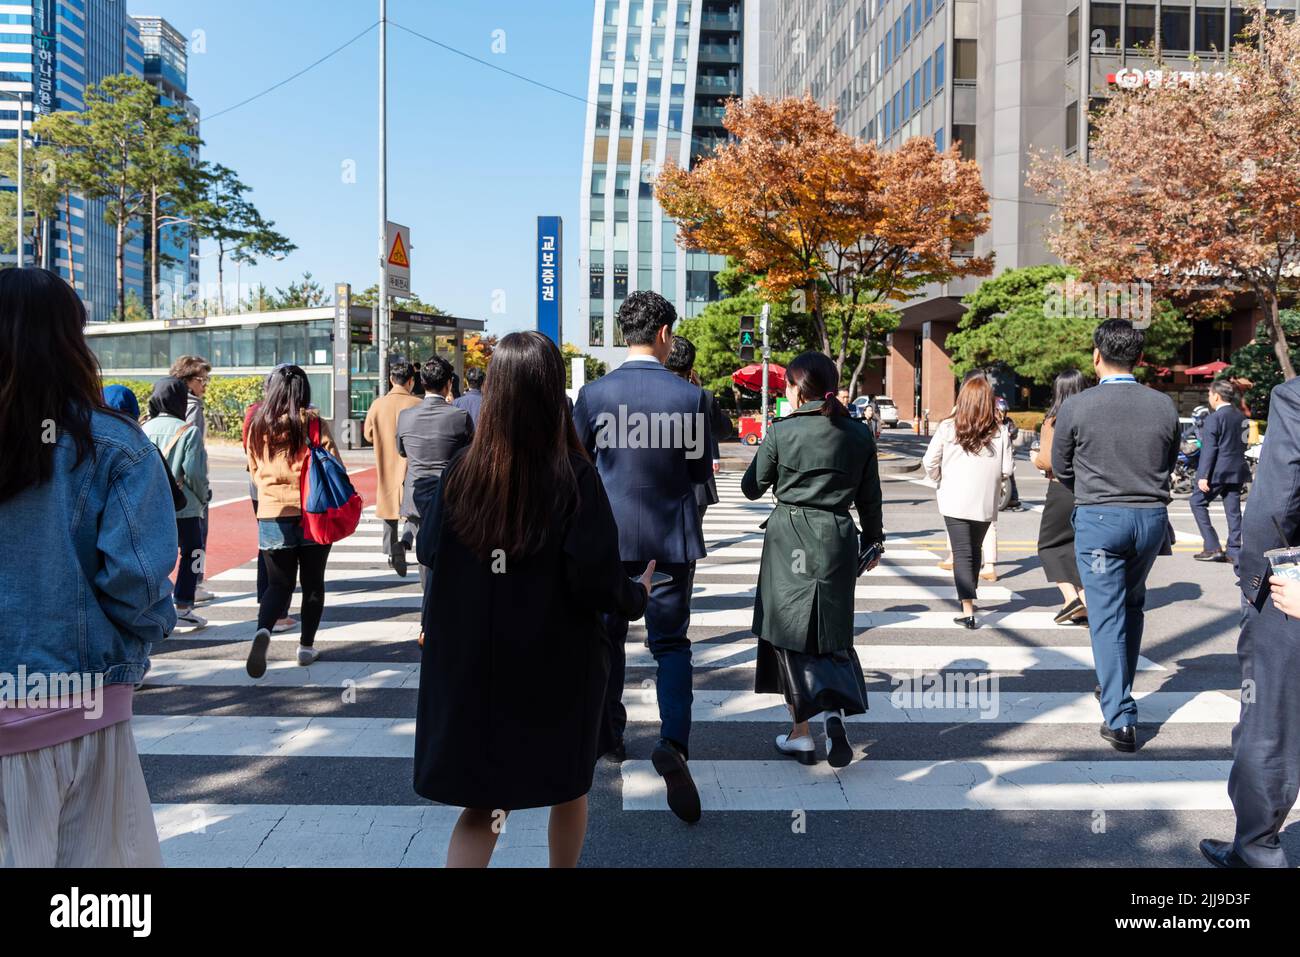 Seoul, Südkorea - 04. November 2019: Straßenszene im Stadtteil Yeouido. Es ist ein Hauptquartier der Finanz- und Investmentbanken in Seoul. Stockfoto